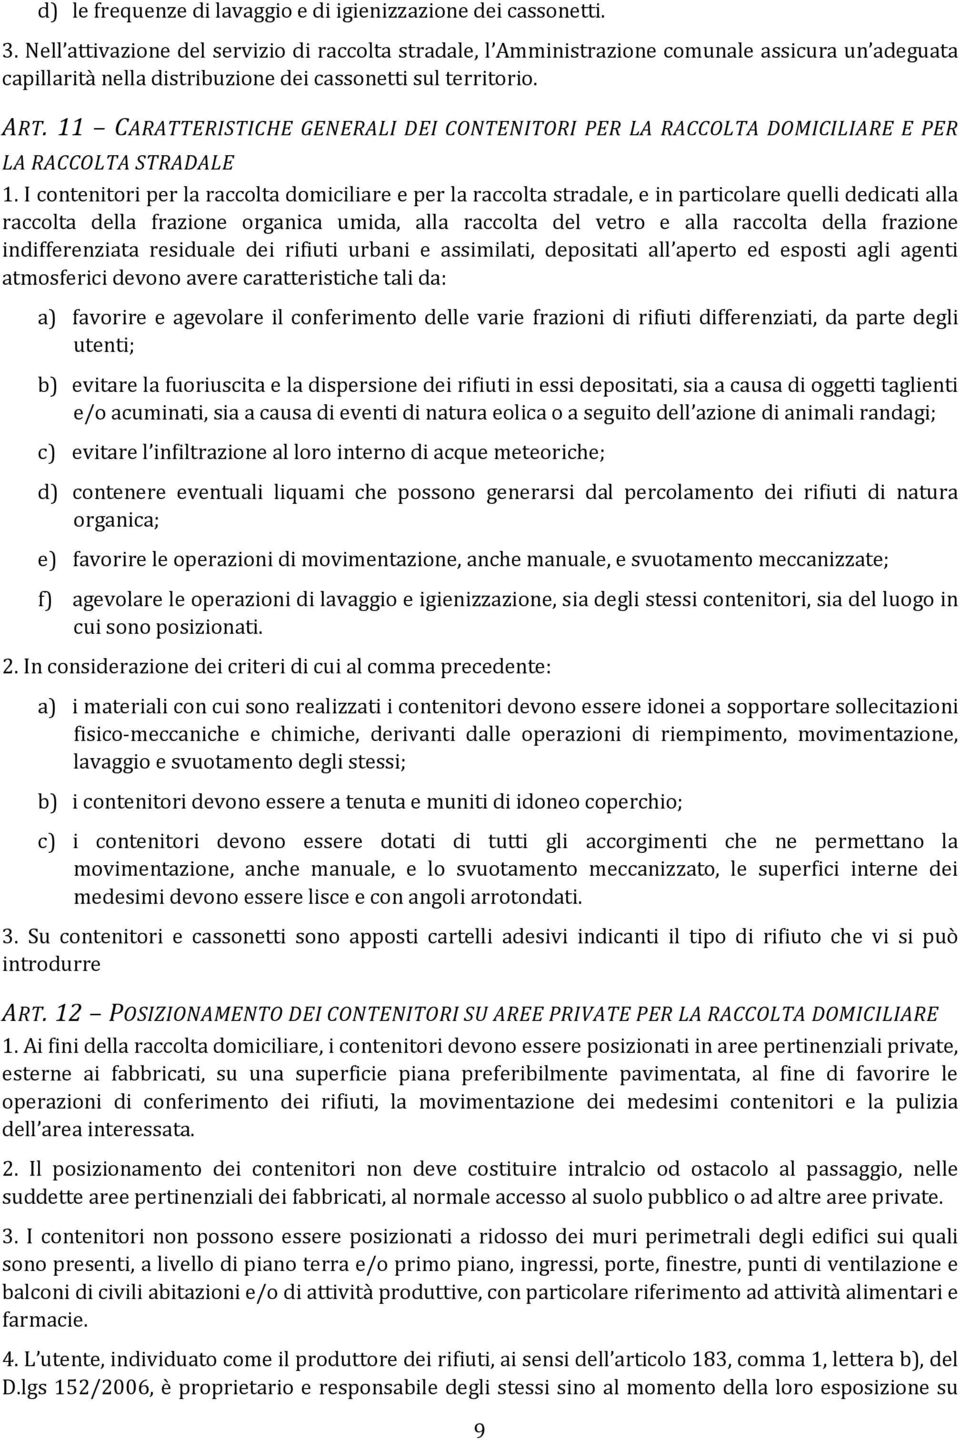 11 CARATTERISTICHE GENERALI DEI CONTENITORI PER LA RACCOLTA DOMICILIARE E PER LA RACCOLTA STRADALE 1.